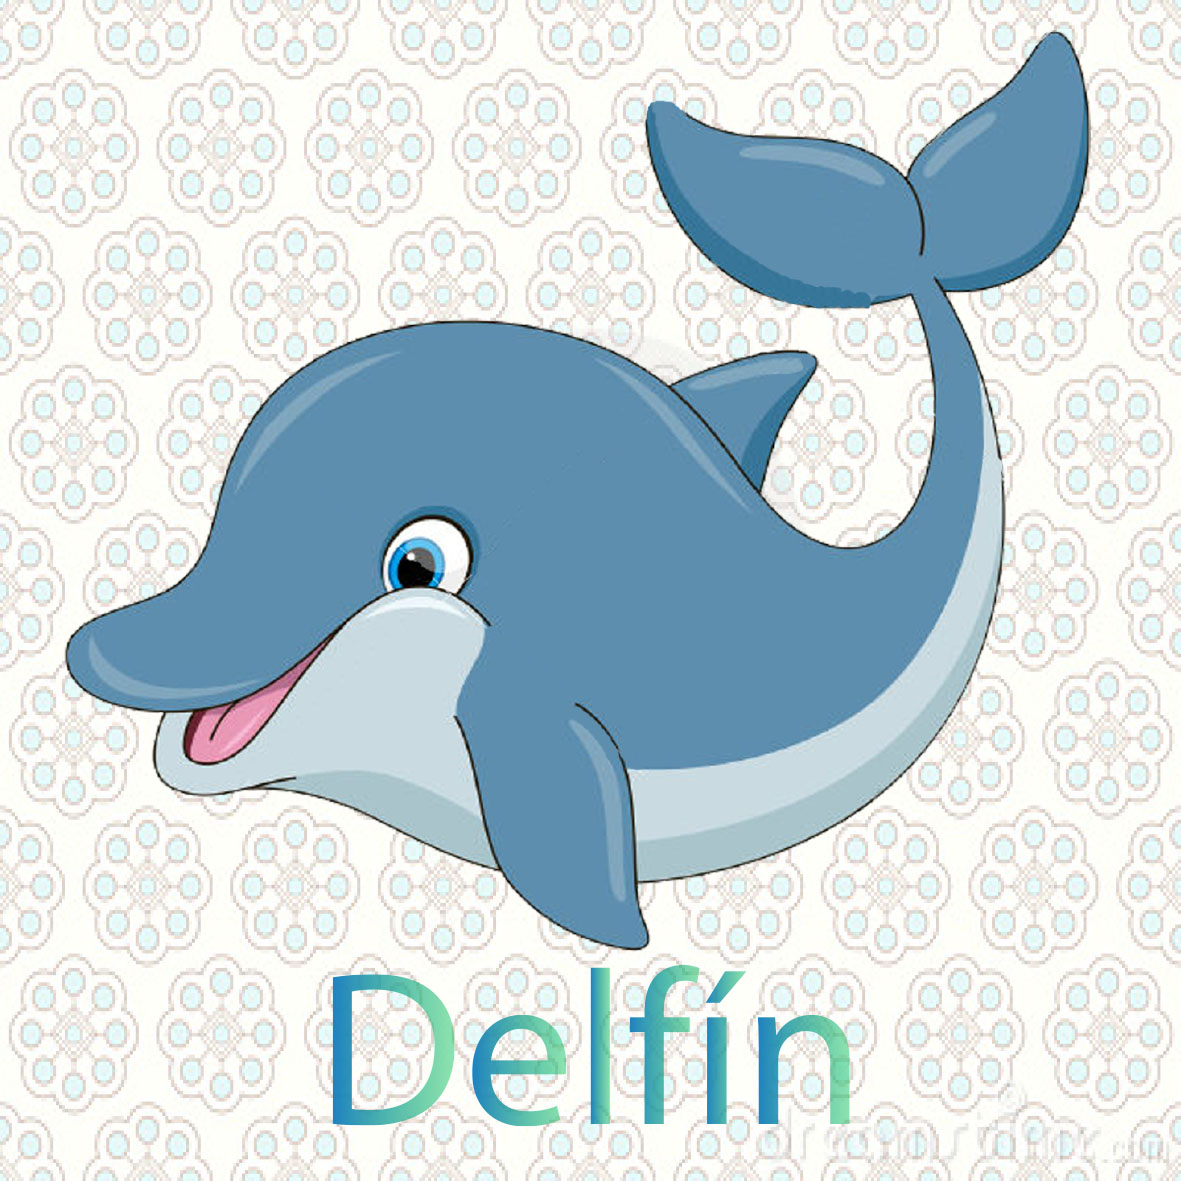  imagen de una delfin, es el animal mas inteligente viven en el mar tiene dos aletas y una cola se alimentan de peces pequeños  